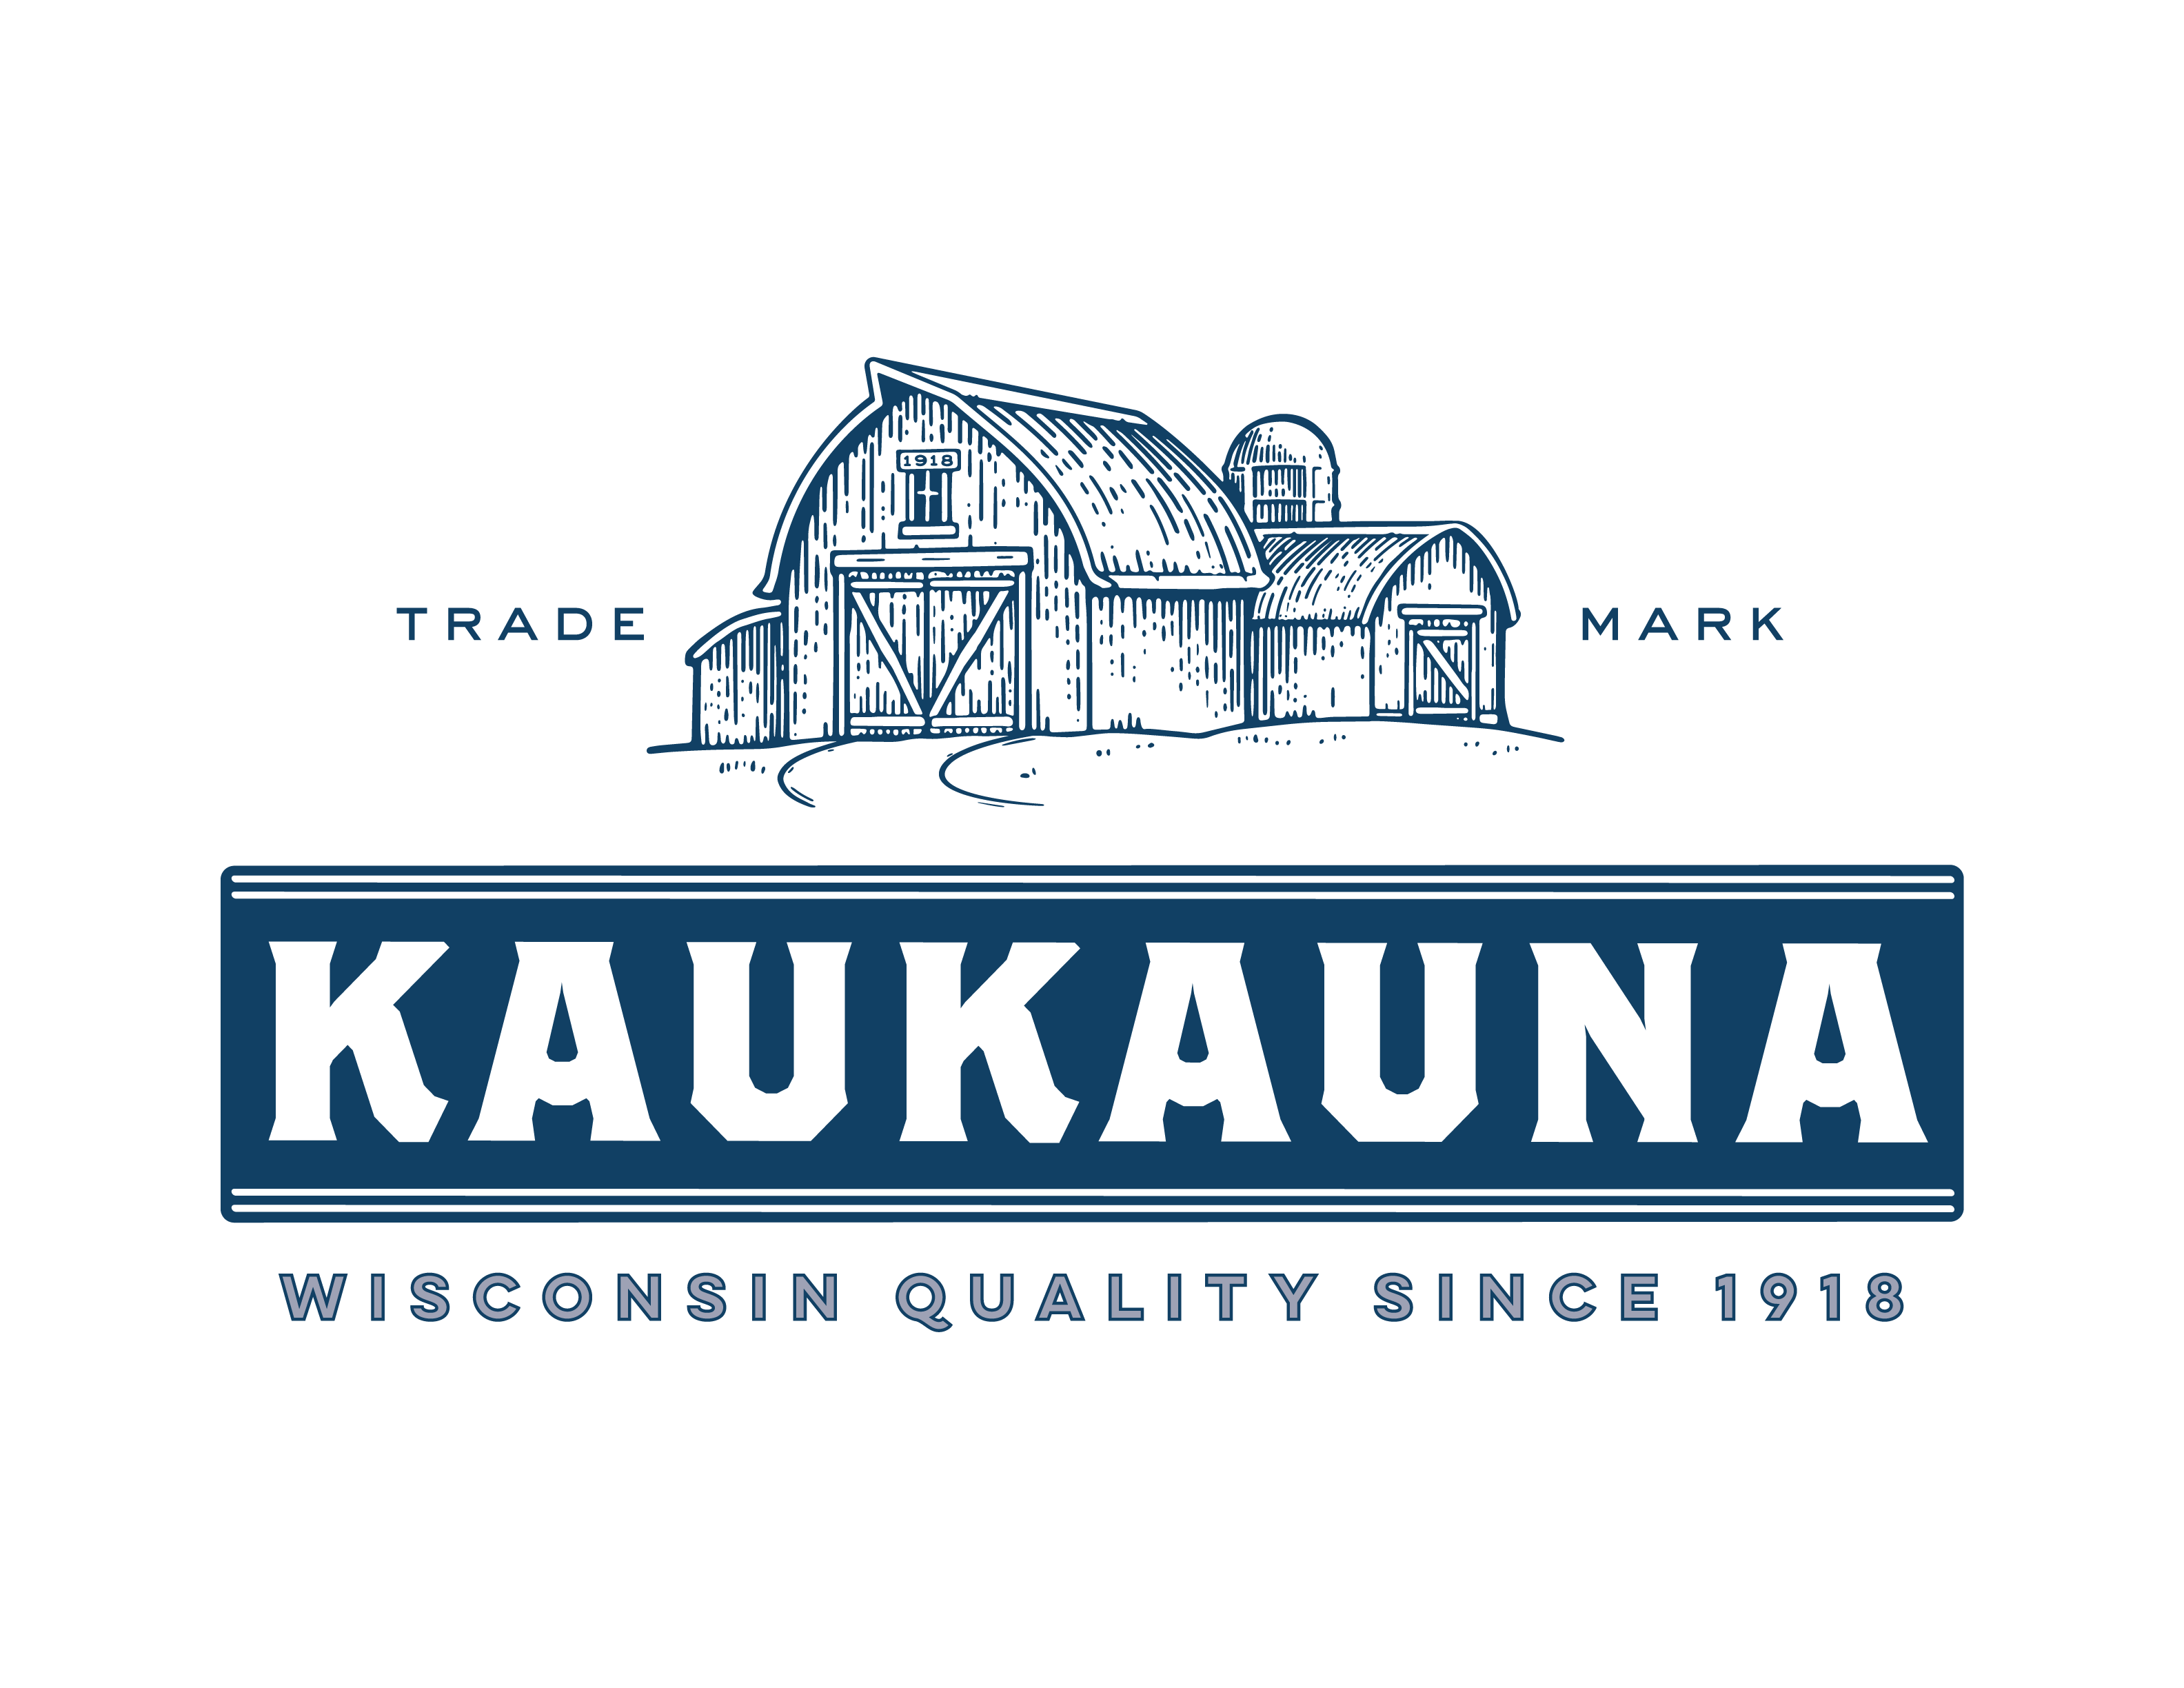 Kaukauna Cheese Celebrates 100th Anniversary